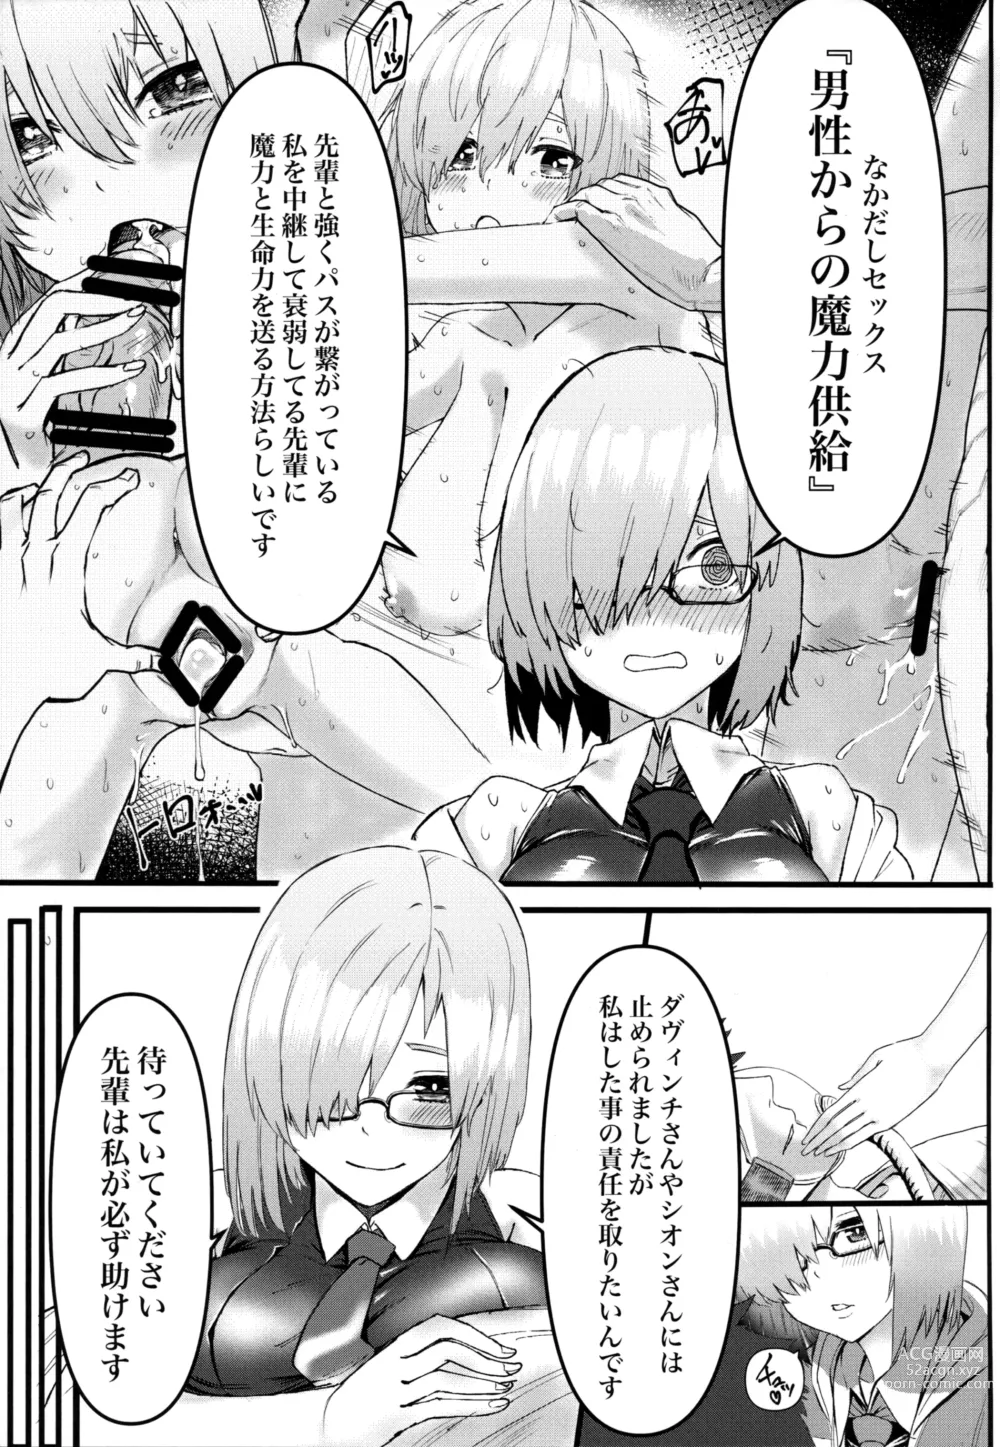 Page 6 of doujinshi Senpai no Tame ni NTR Mash!